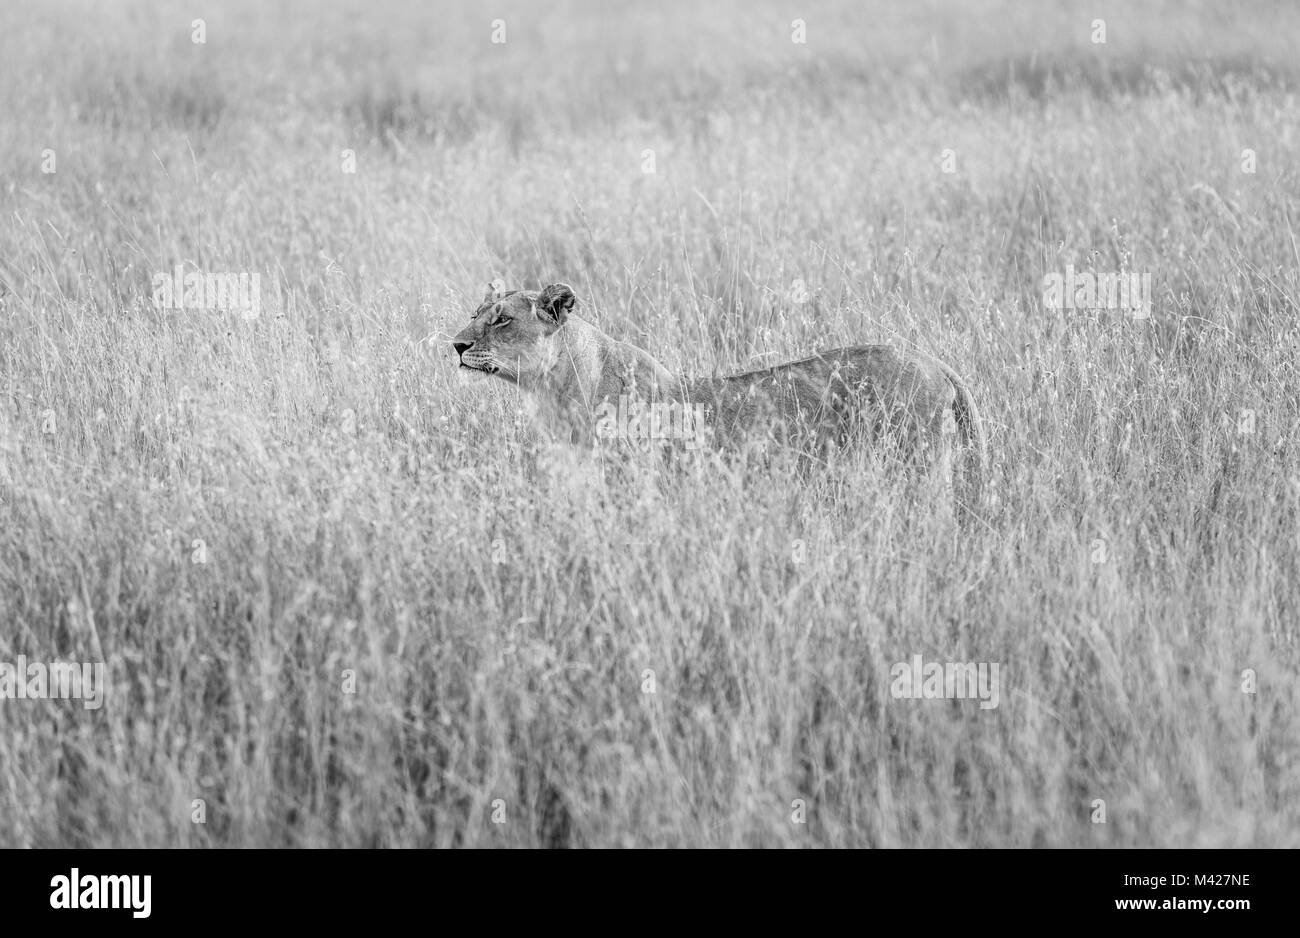 Big 5 depredador: sigilosa vigilante león (Panthera leo) está parcialmente oculta en el césped largo, alerta y vigilante acechar presas, Masai Mara, Kenya Foto de stock